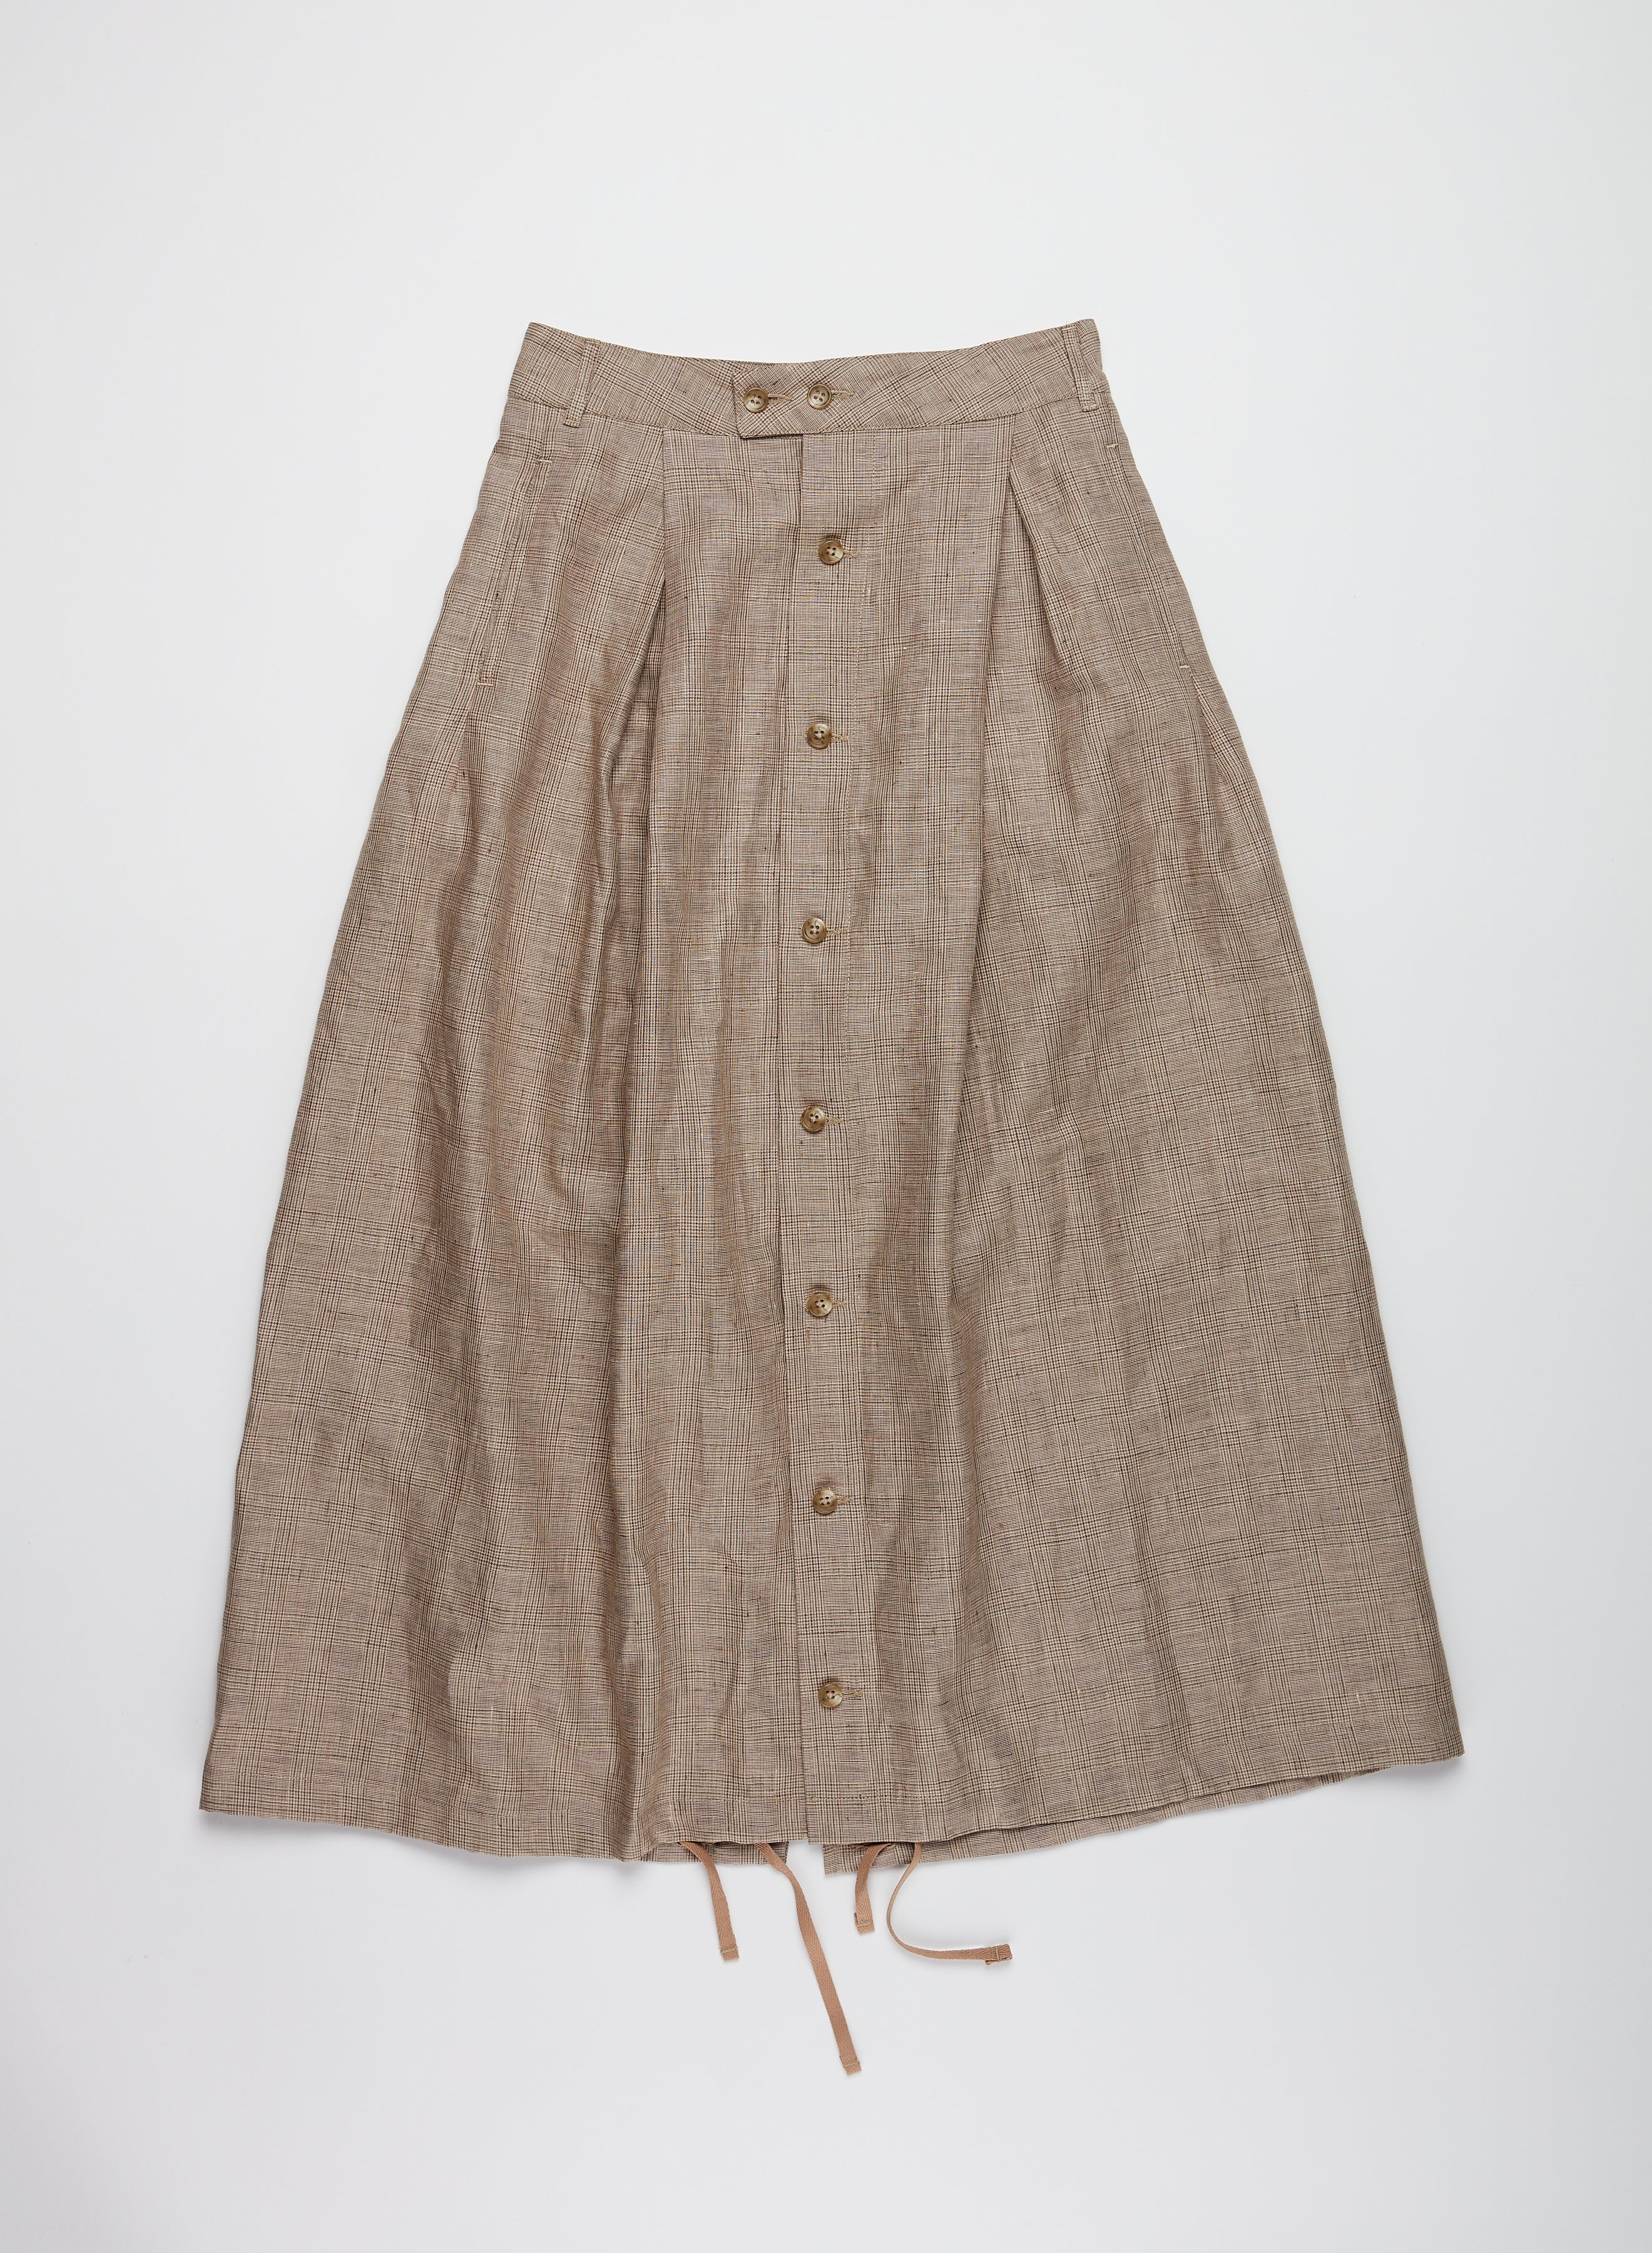 Tuck Skirt - Beige Linen Glen Plaid